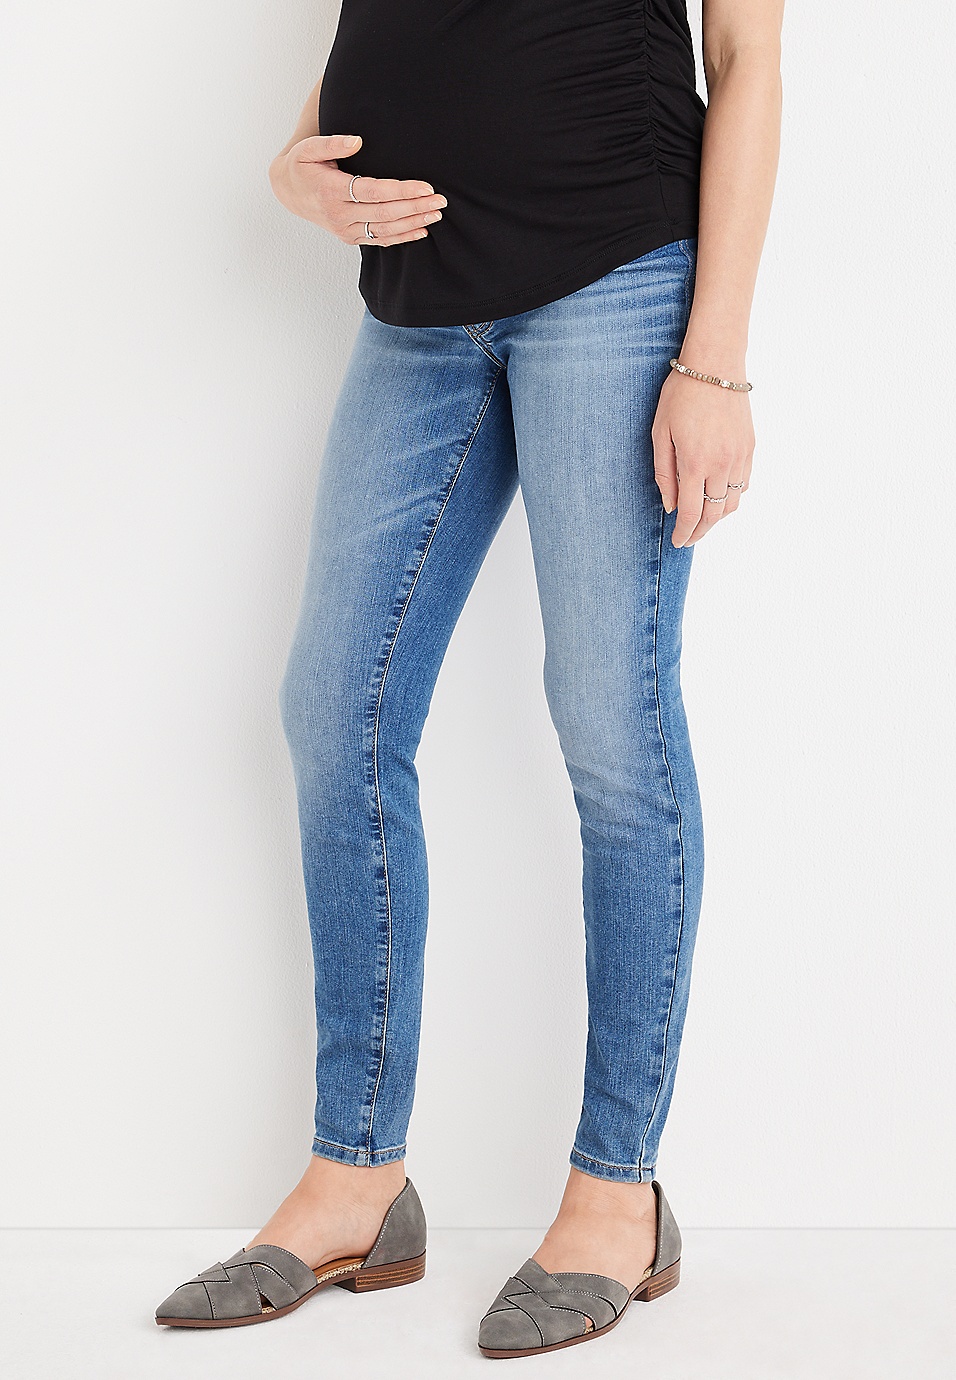 Ligner Moderne køretøj m jeans by maurices™ Everflex™ Super Skinny Side Panel Maternity Jean |  maurices